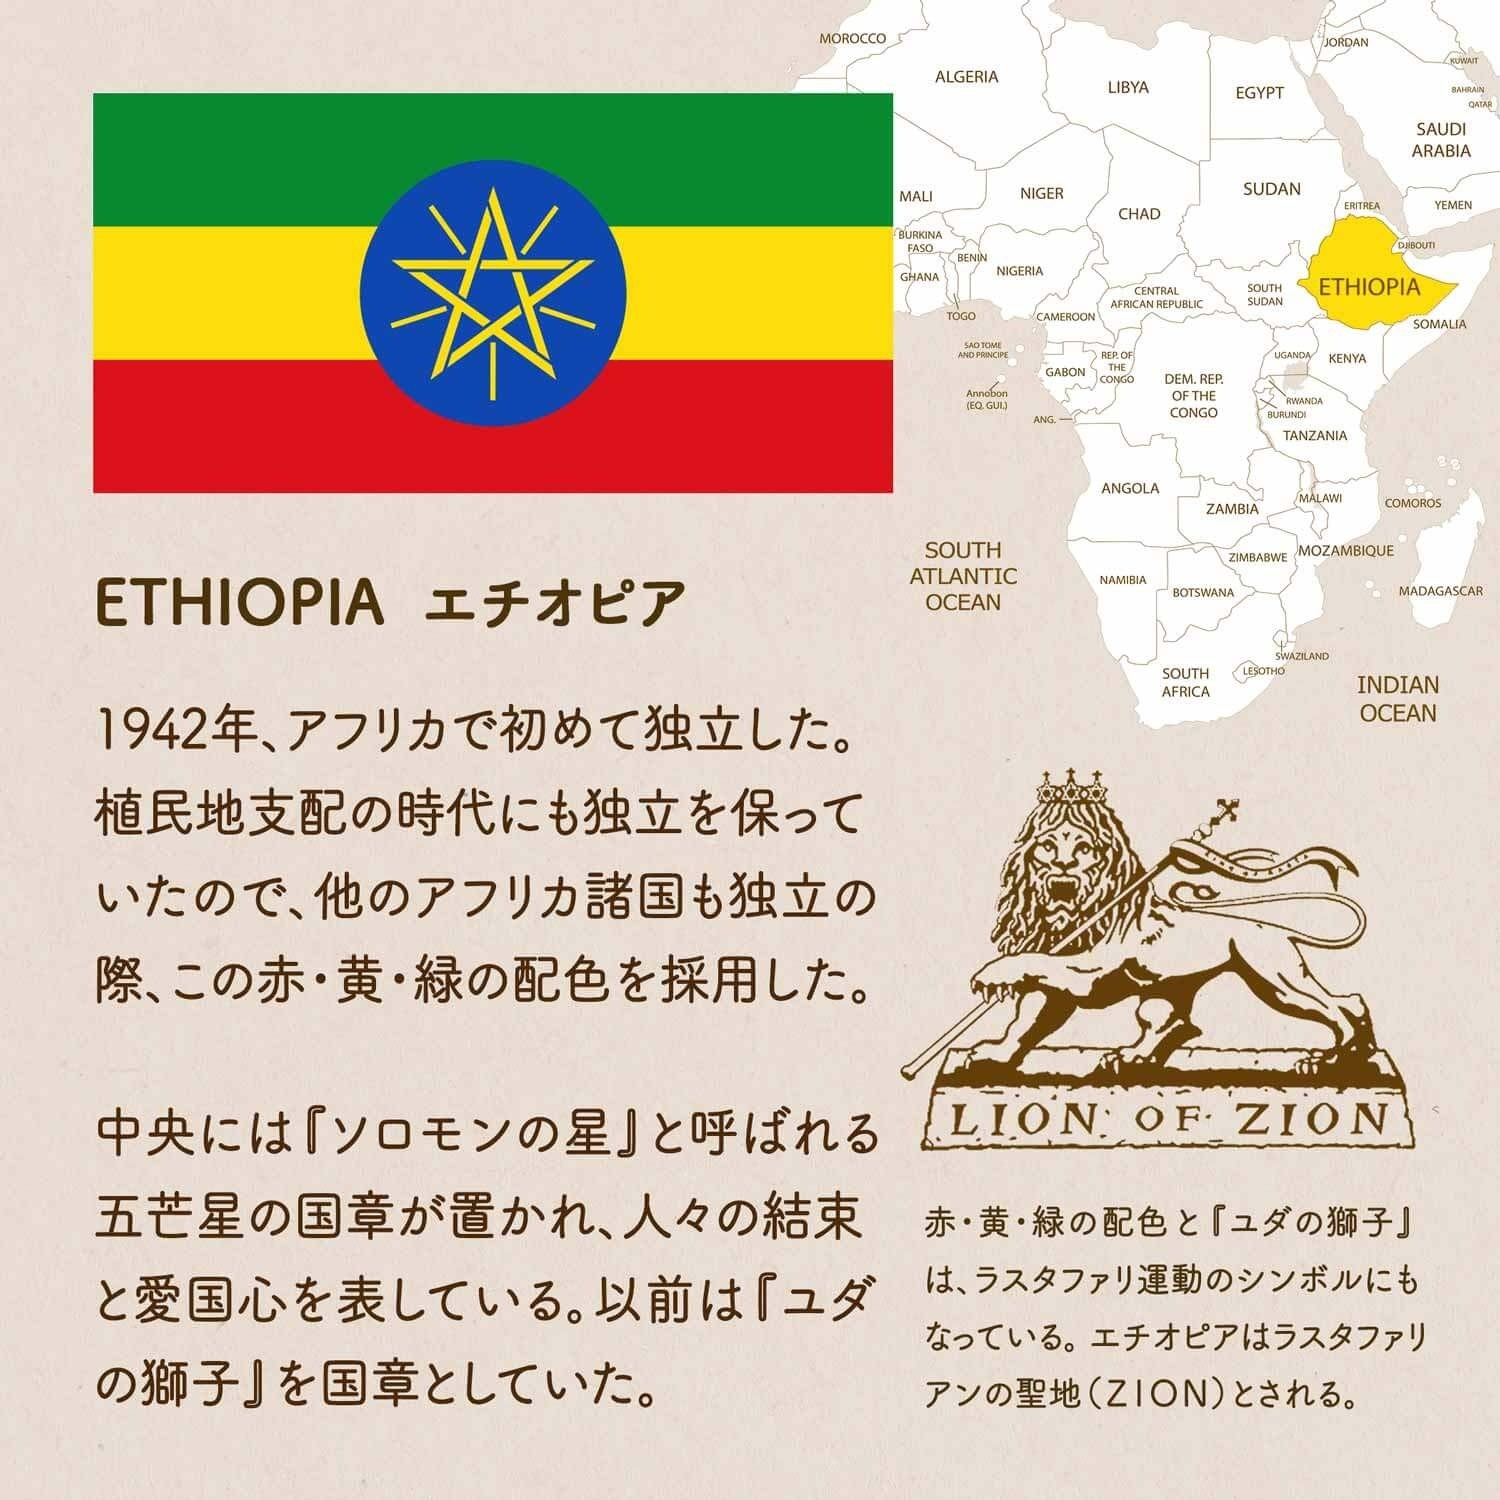 エチオピアの国旗 | アフリカ | 世界の国旗 - デザインから世界を学ぼう -